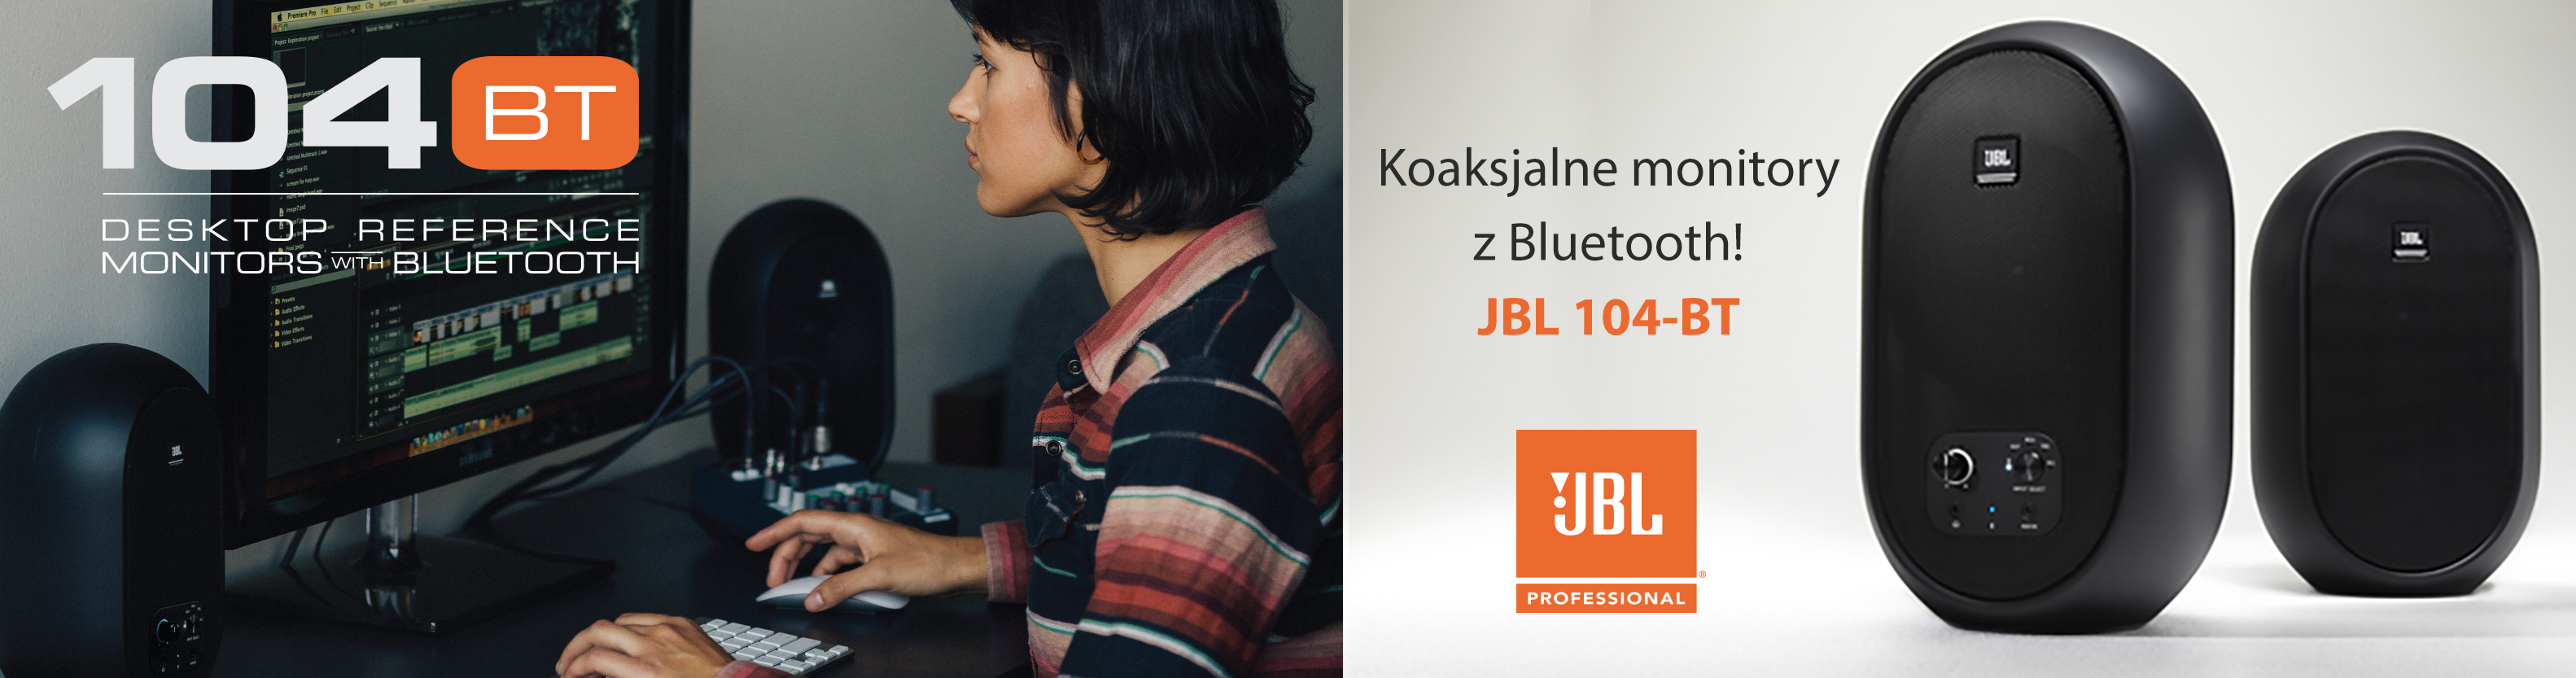 Koaksjalne monitory z Bluetooth! JBL 104-BT